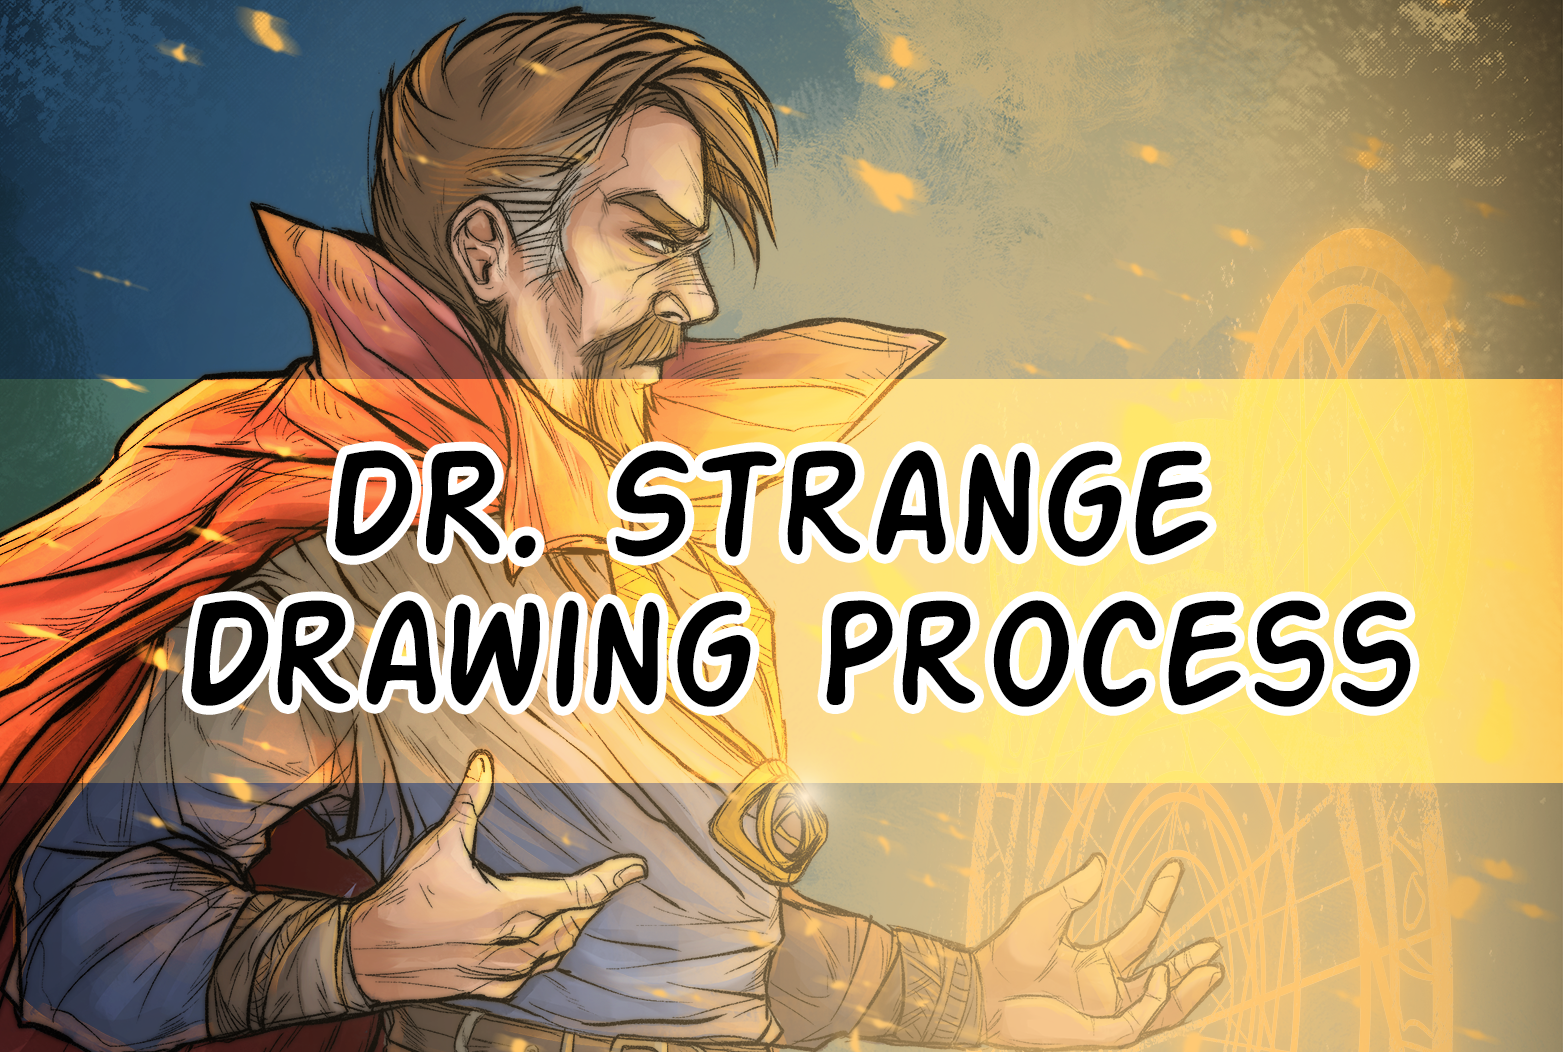 How to Draw Chibi Dr. Strange | Doctor strange, Chibi drawings, Chibi